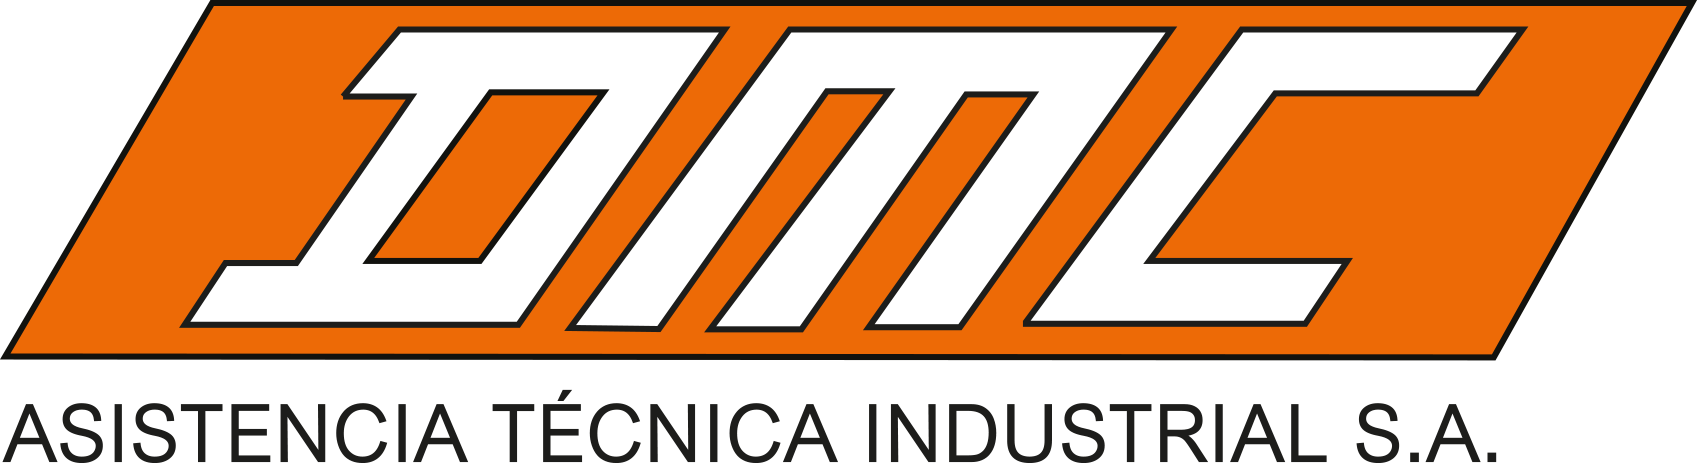 DMC Asistencia Tecnica Industrial